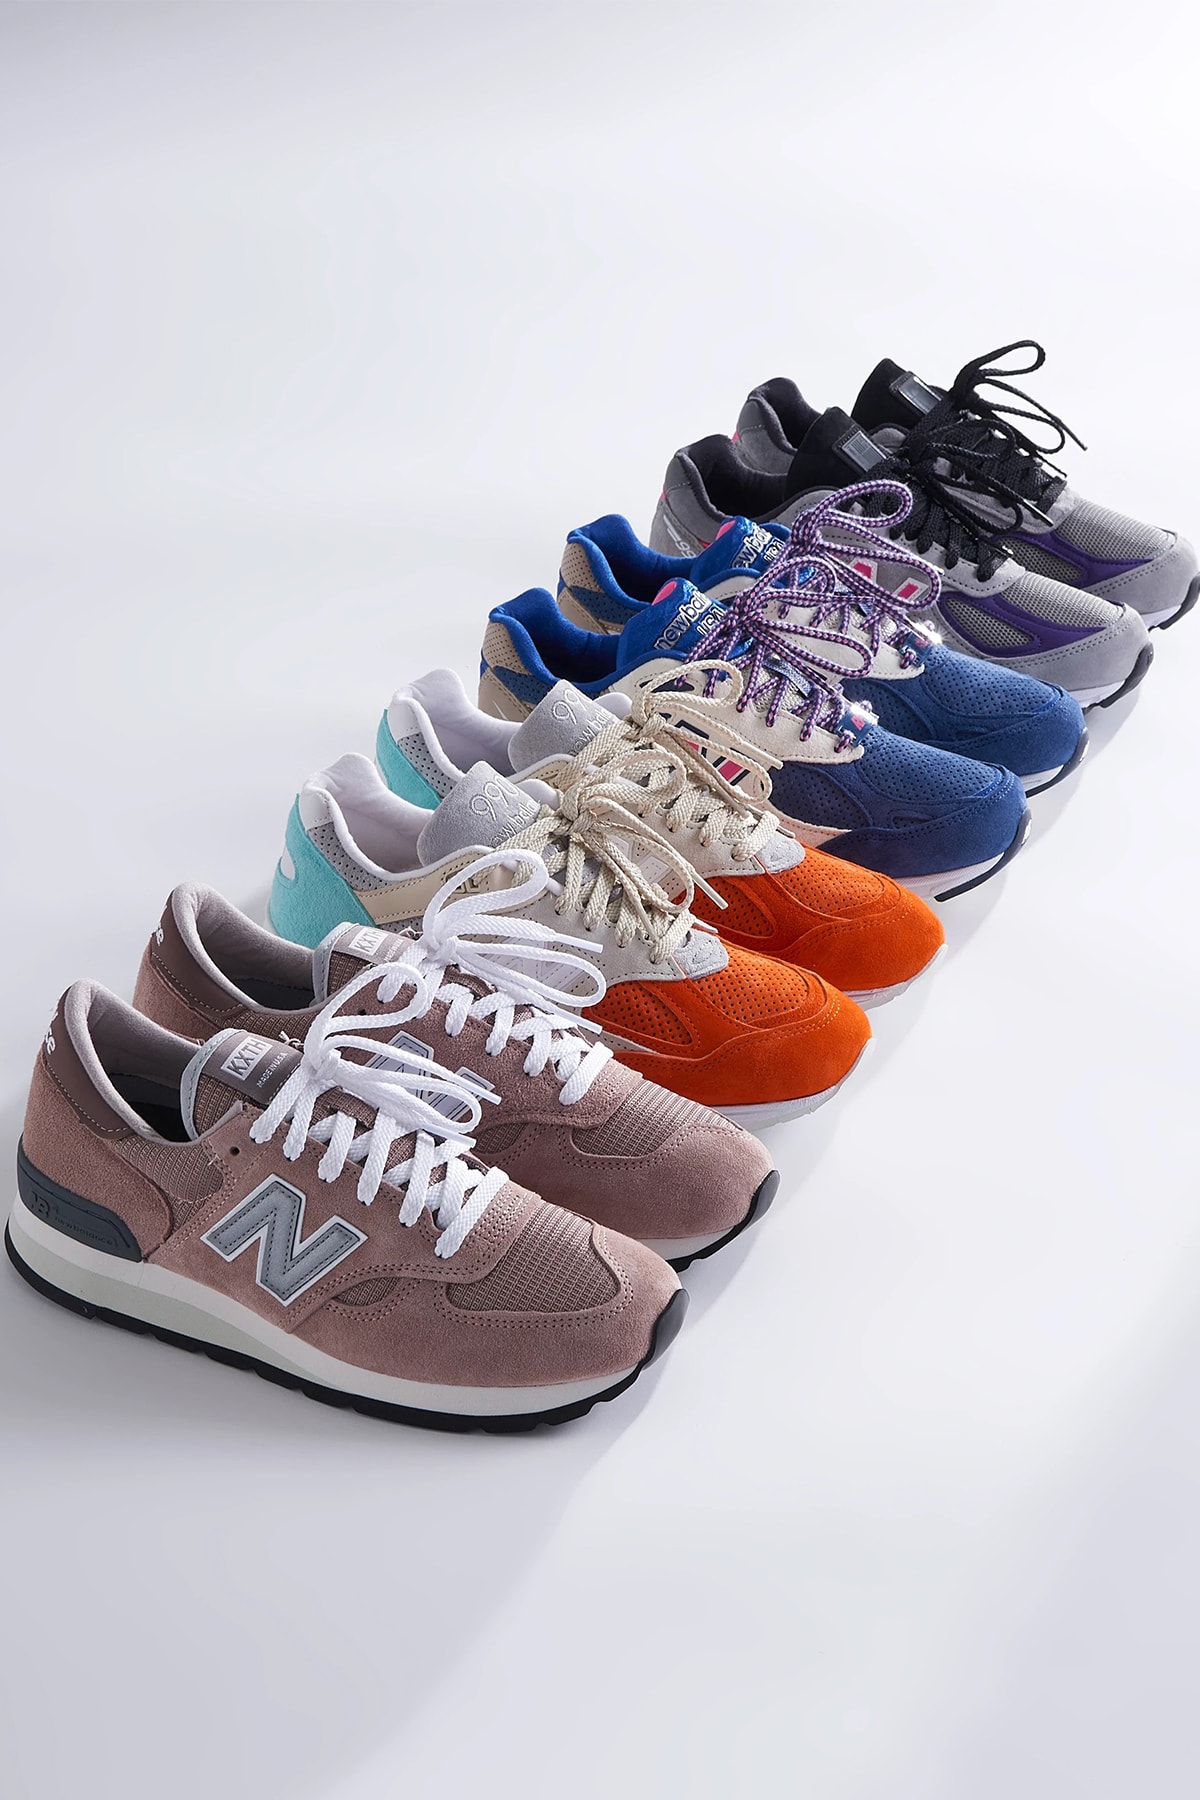 KITH x New Balance 990v4 最新聯乘鞋款發售情報正式公佈